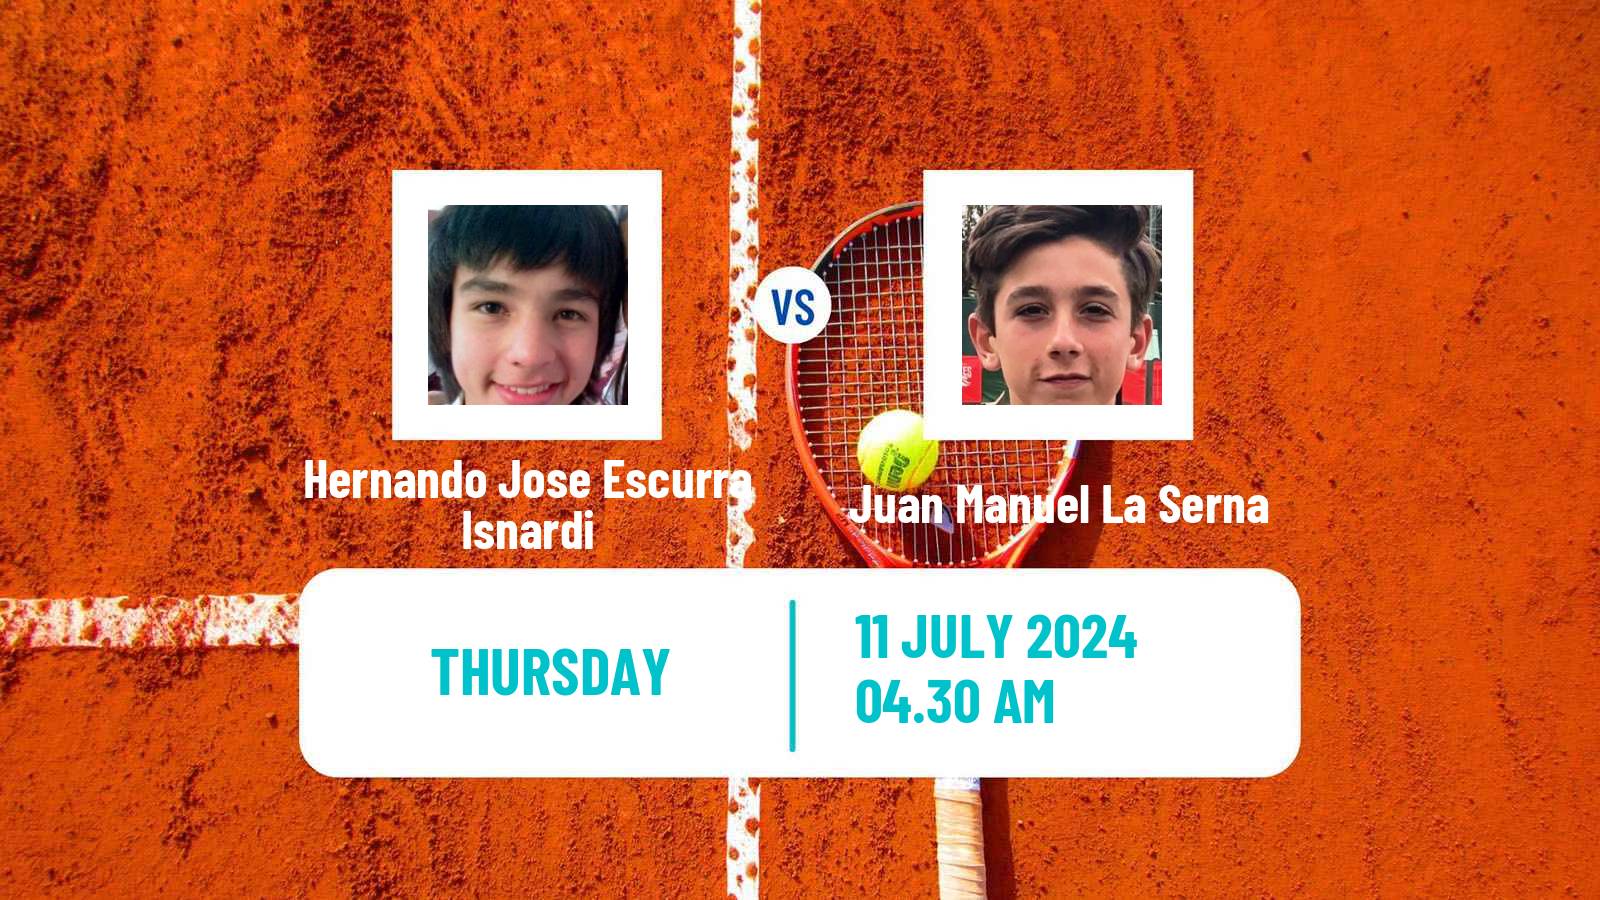 Tennis ITF M15 Kursumlijska Banja 10 Men Hernando Jose Escurra Isnardi - Juan Manuel La Serna